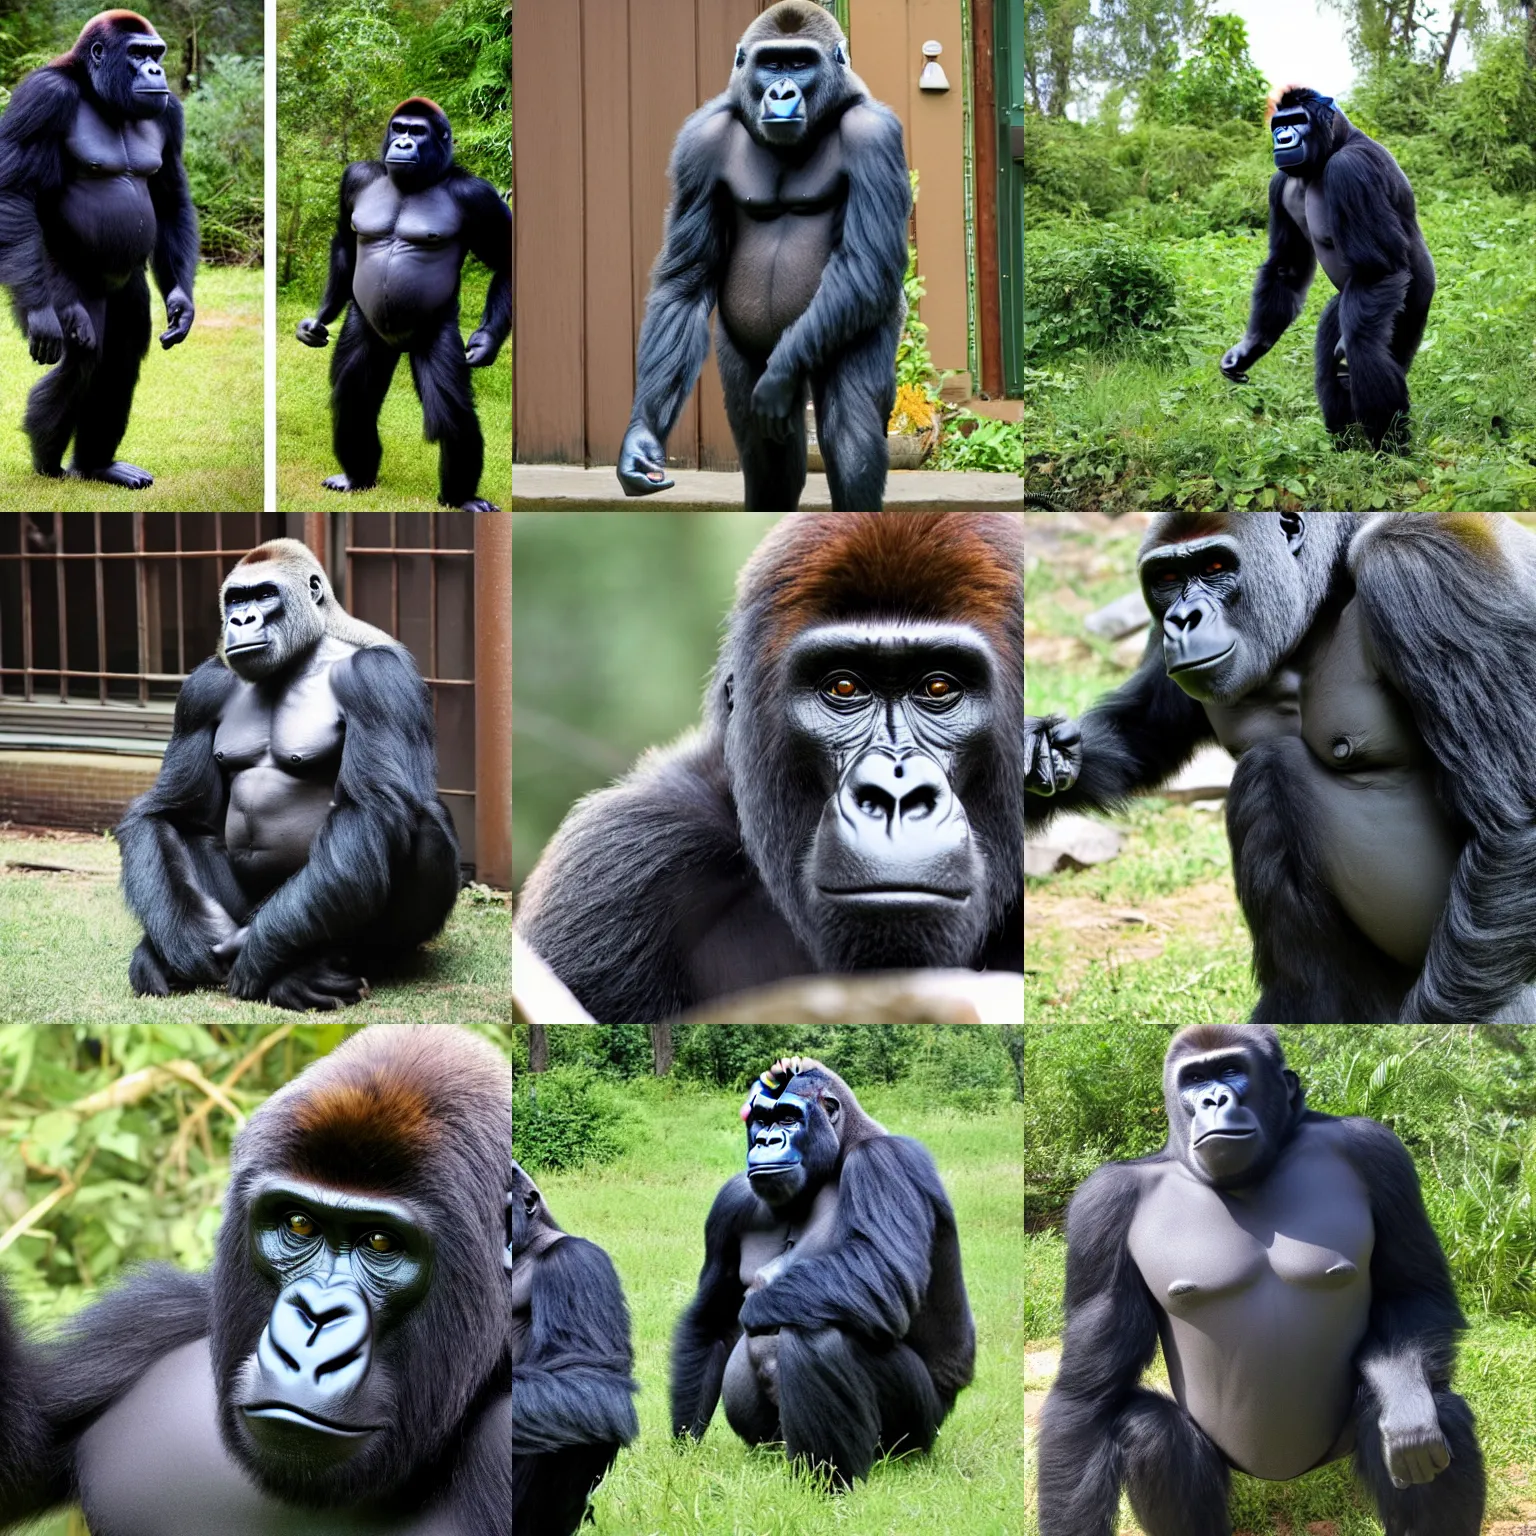 Prompt: gorilla as felonius gru